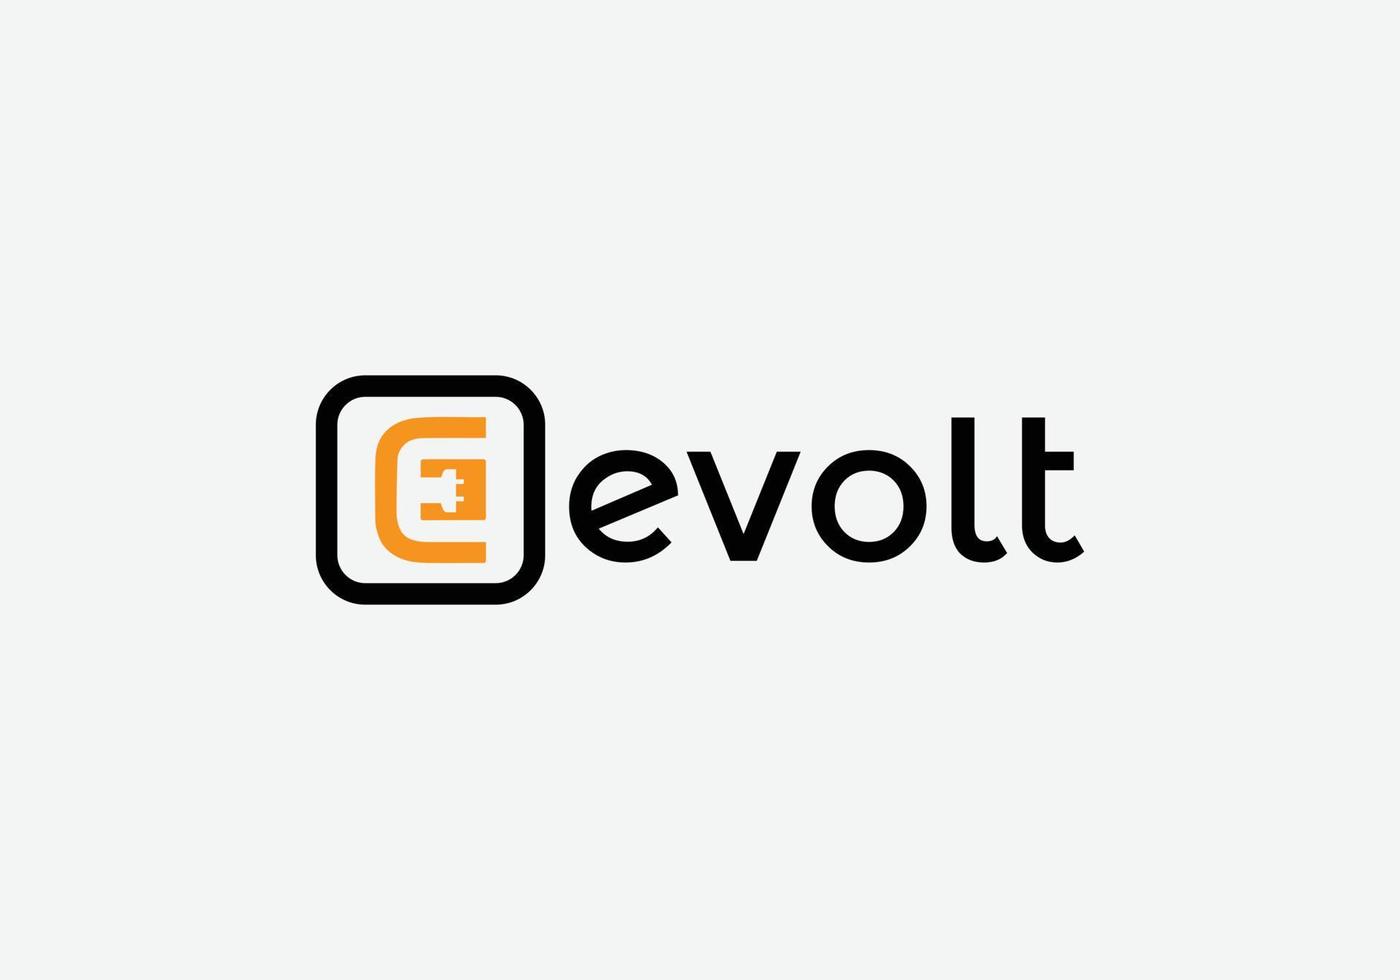 e-volt abstract e letter diseño de logotipo de emblema de tecnología minimalista moderna vector